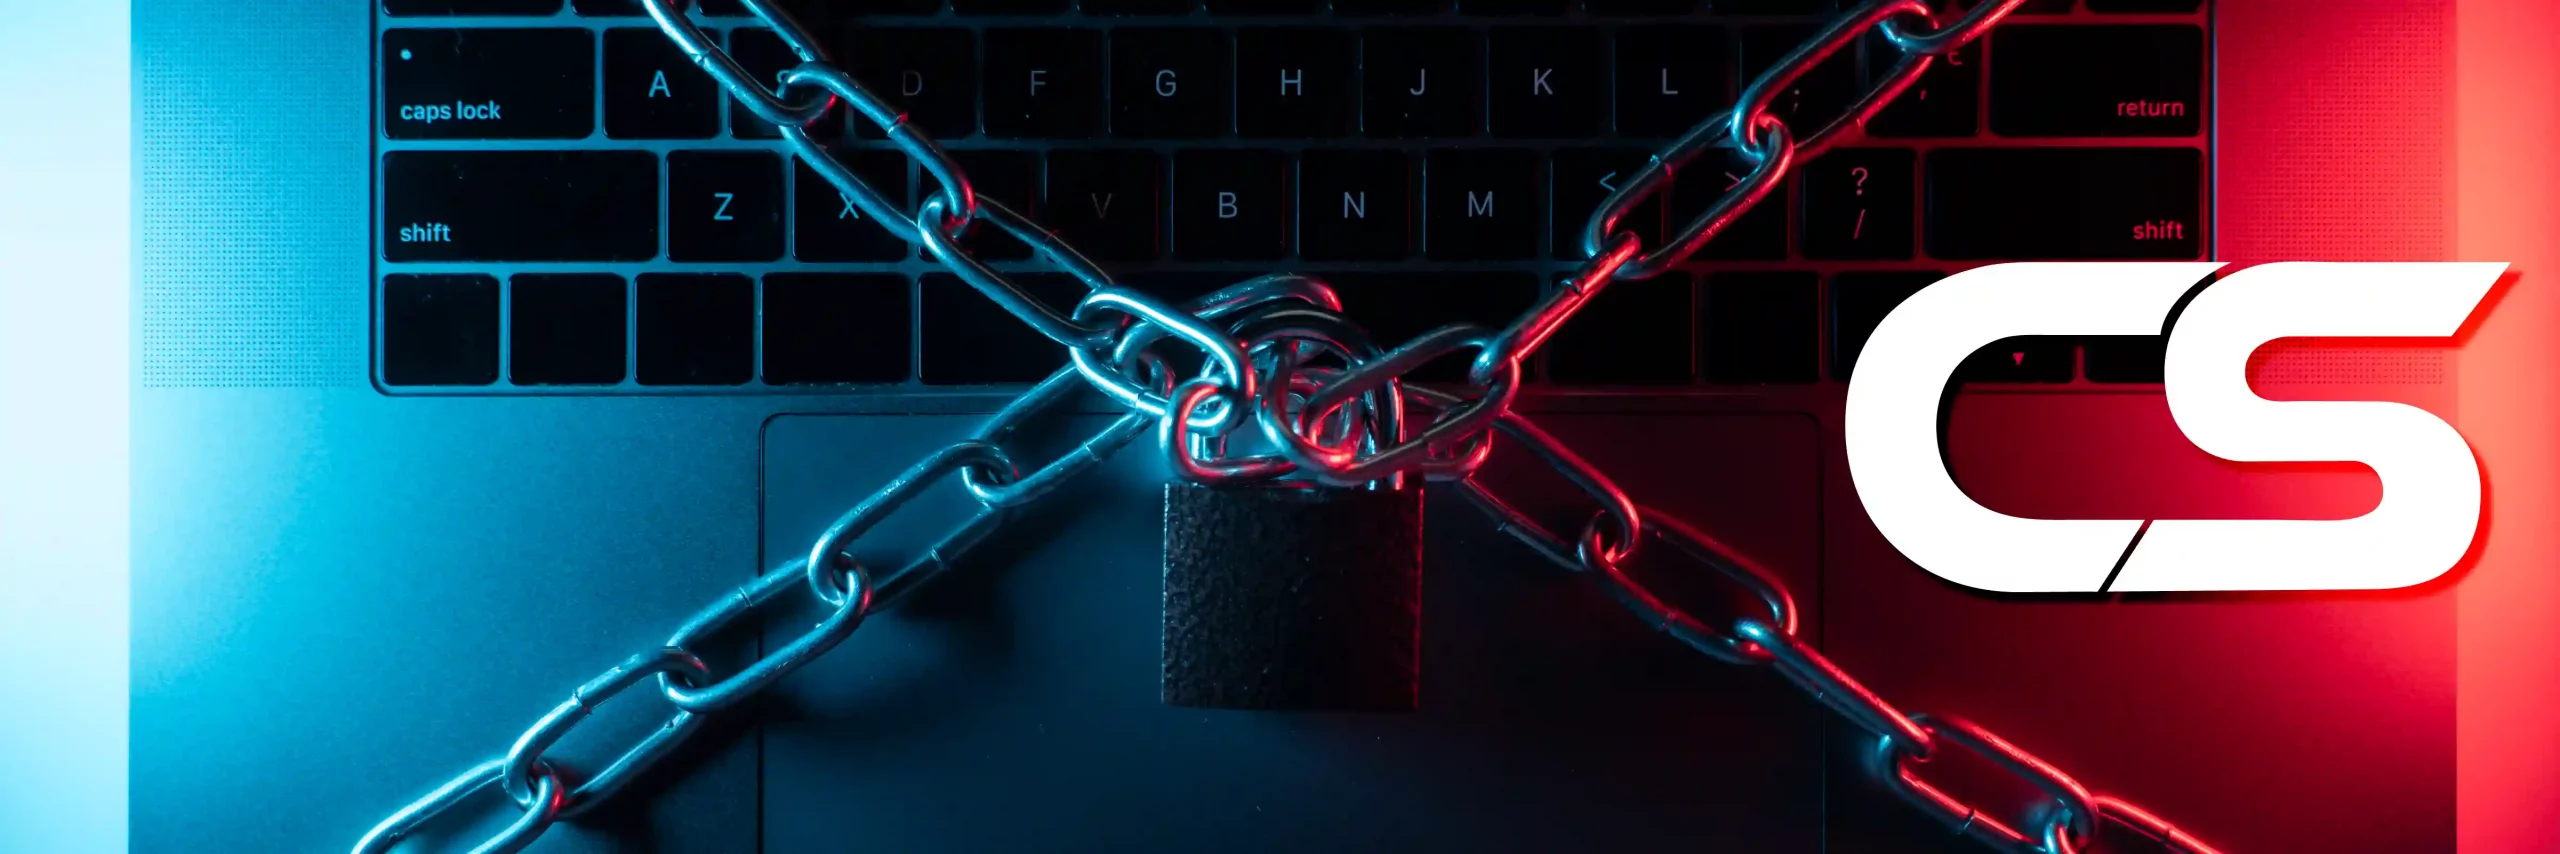 Tipos de Ataques en Redes: Desafiando las Fronteras Digitales